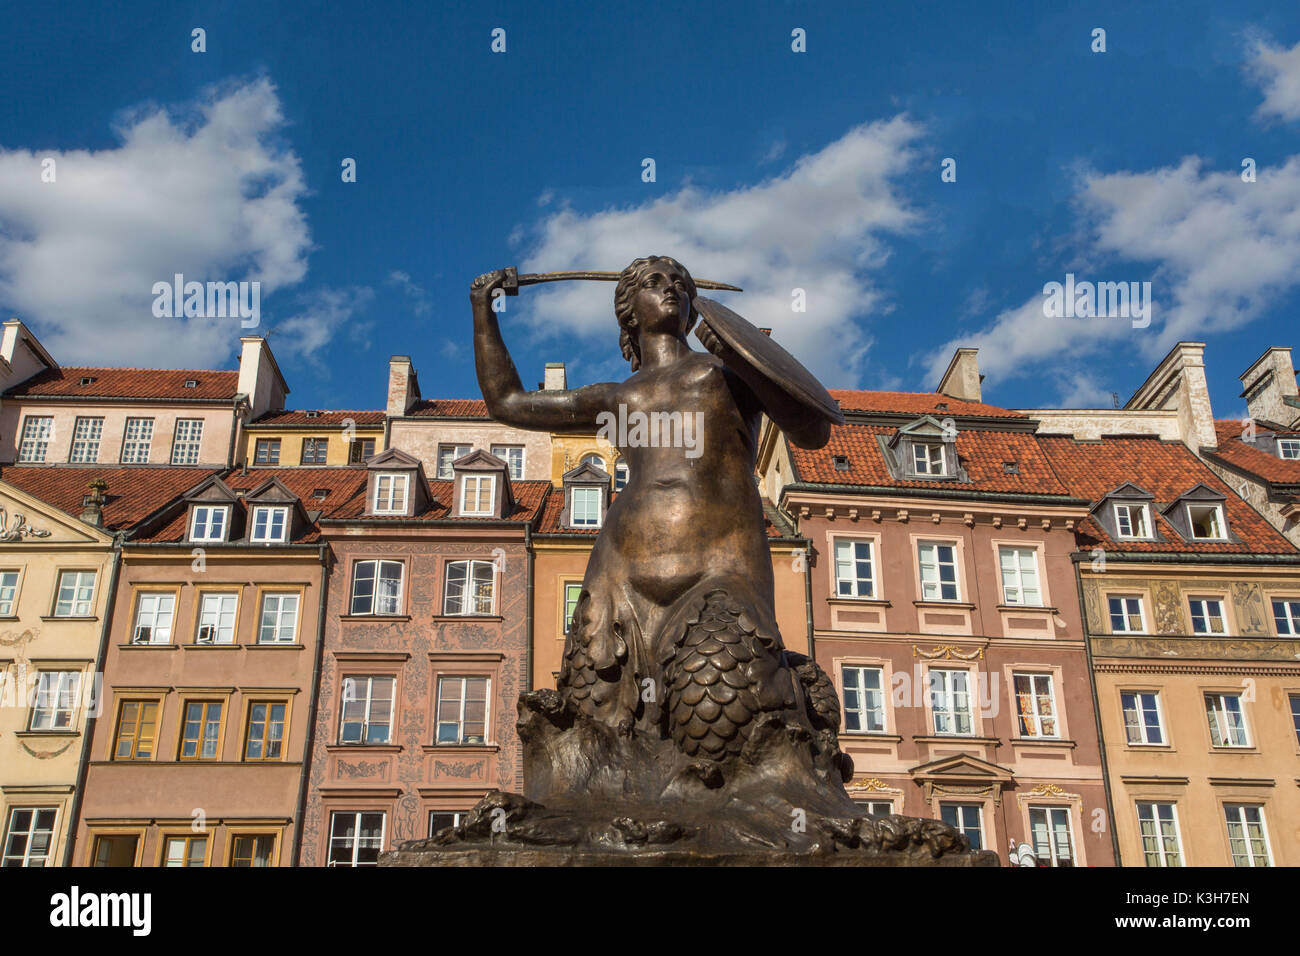 Polonia, Warzaw ciudad, Plaza de la Ciudad Vieja, la estatua de la sirena Foto de stock